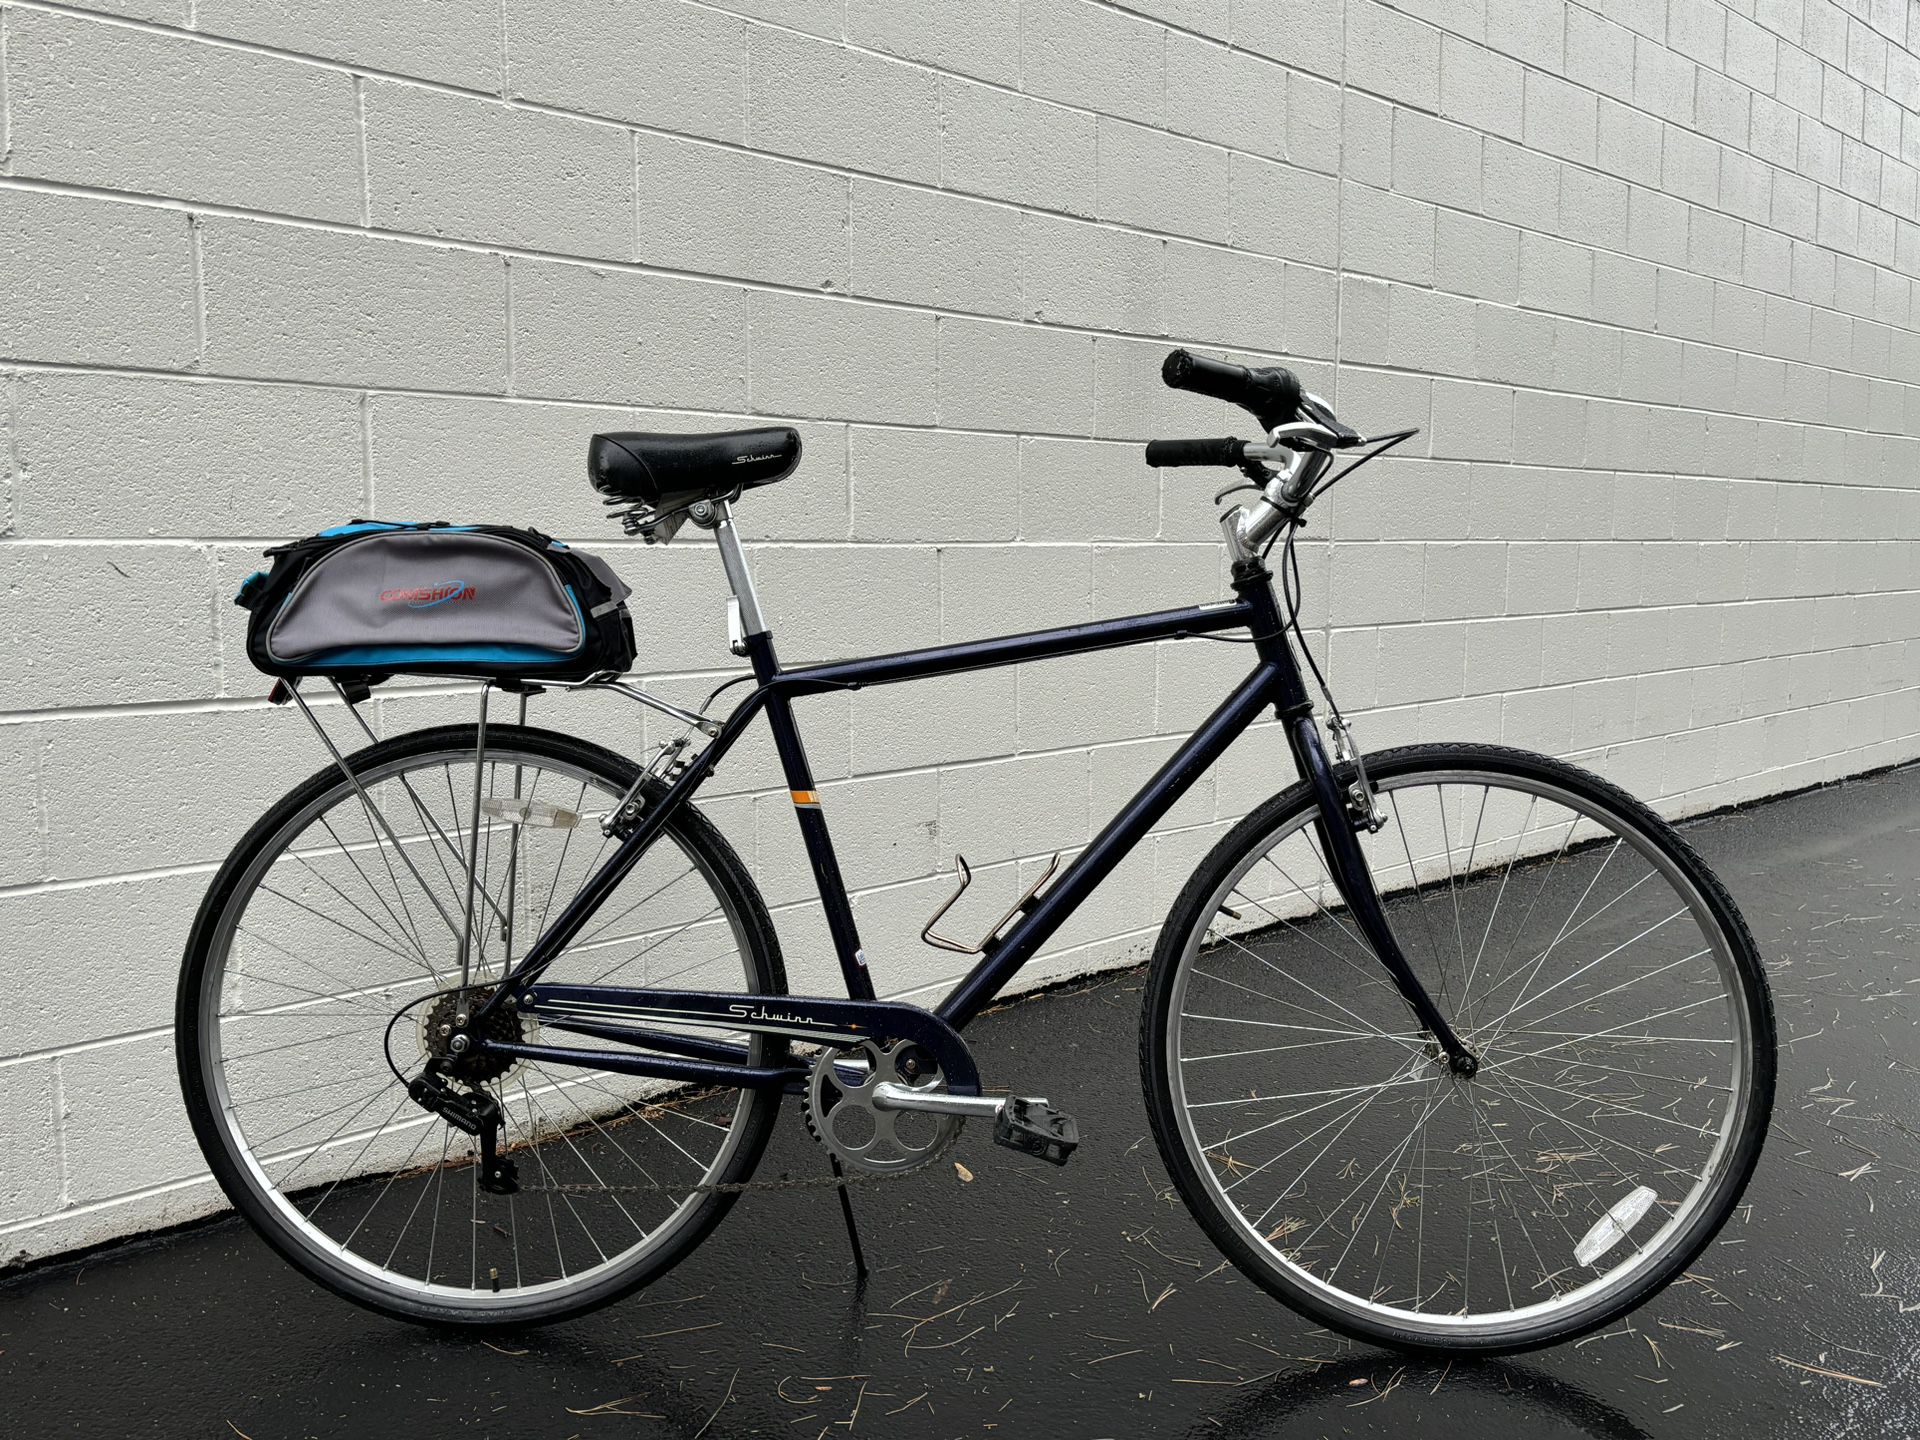 Schwinn Hybrid Road Bike